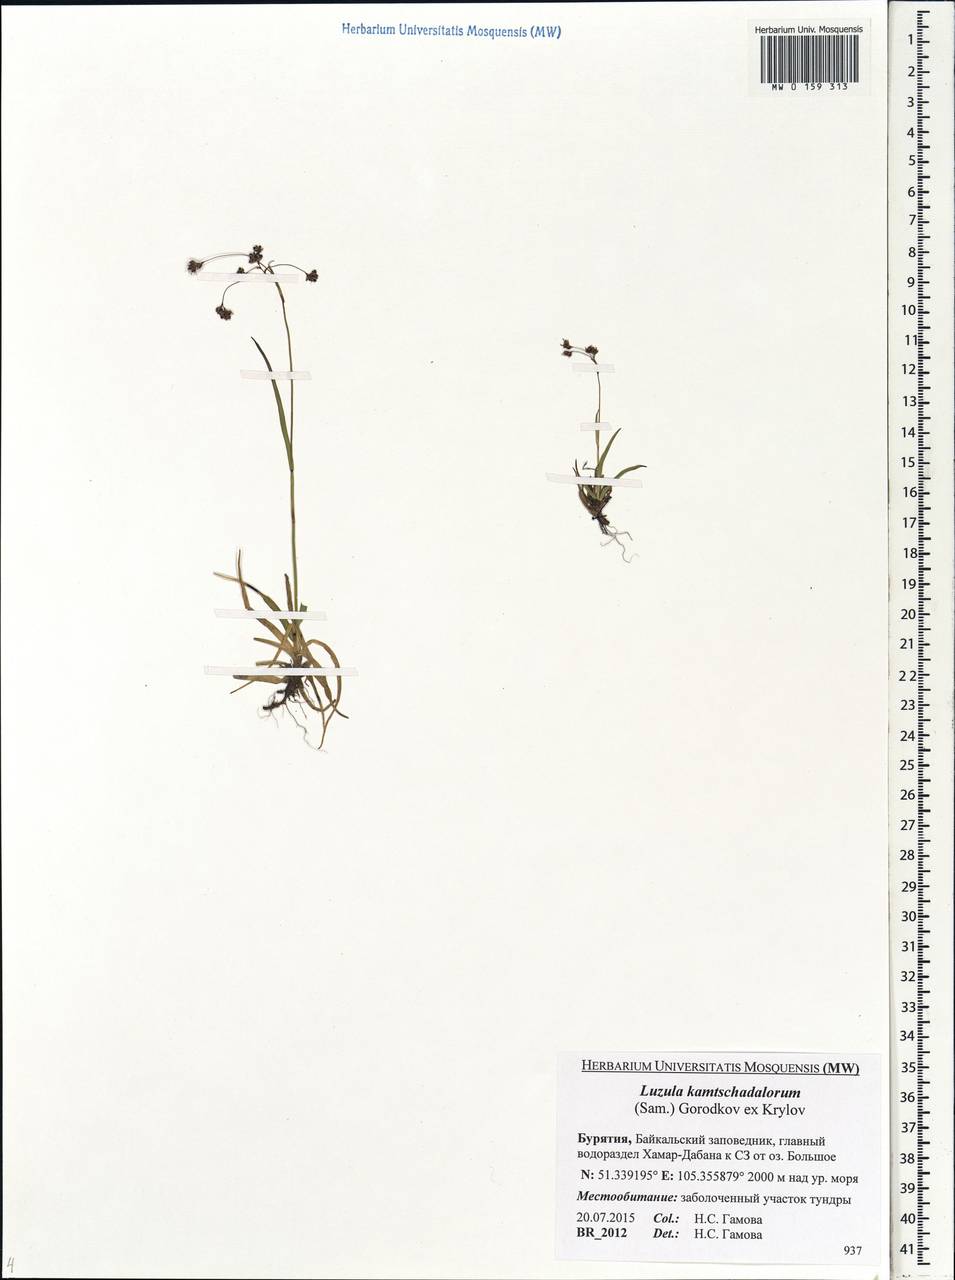 Luzula arcuata subsp. unalaschkensis (Buch.) Hultén, Сибирь, Прибайкалье и Забайкалье (S4) (Россия)